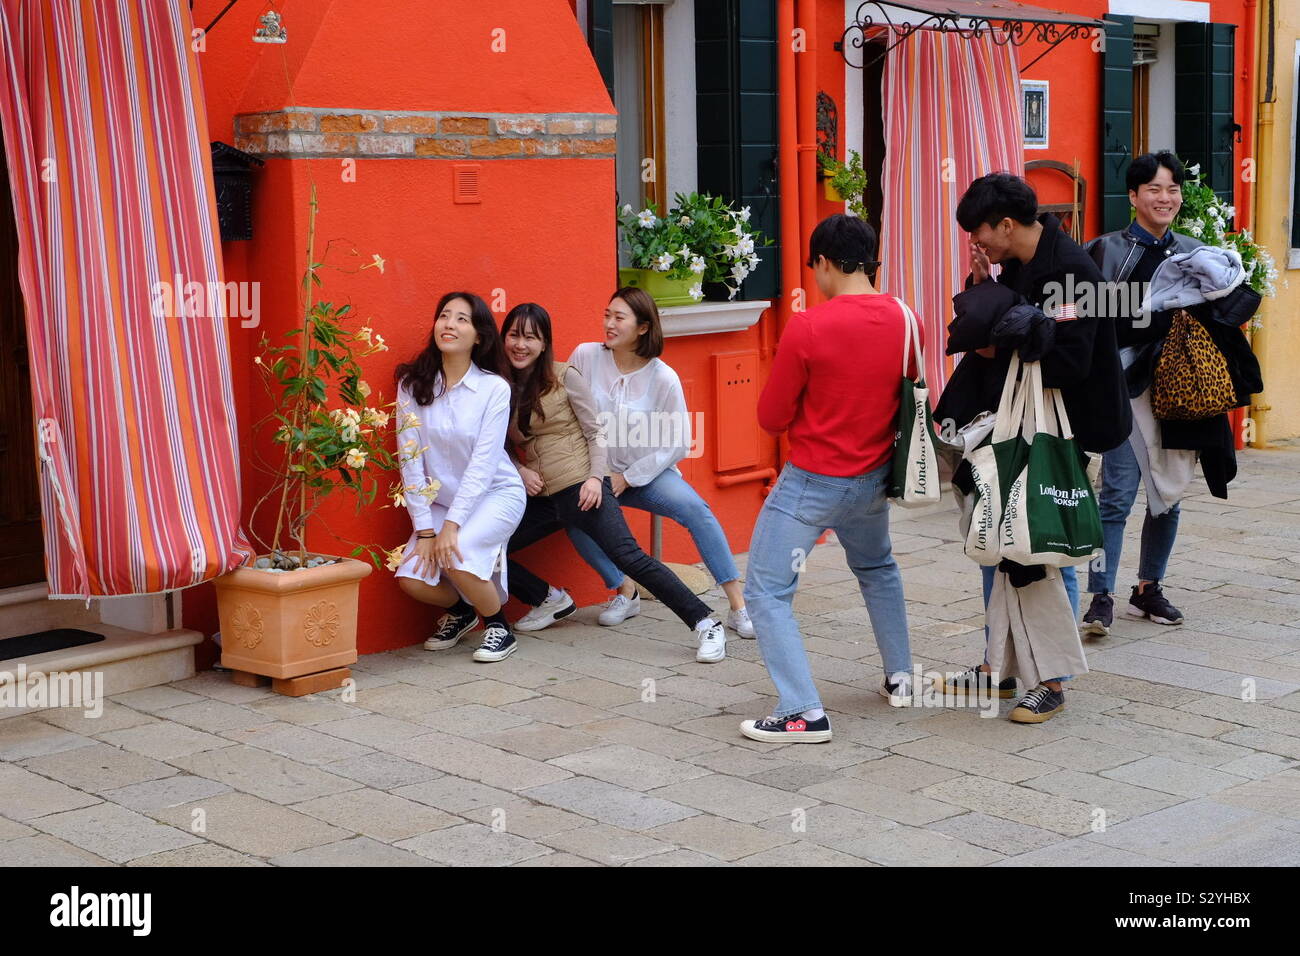 Turismo de Asia las niñas posar para las fotos por una pared de colores brillantes Foto de stock